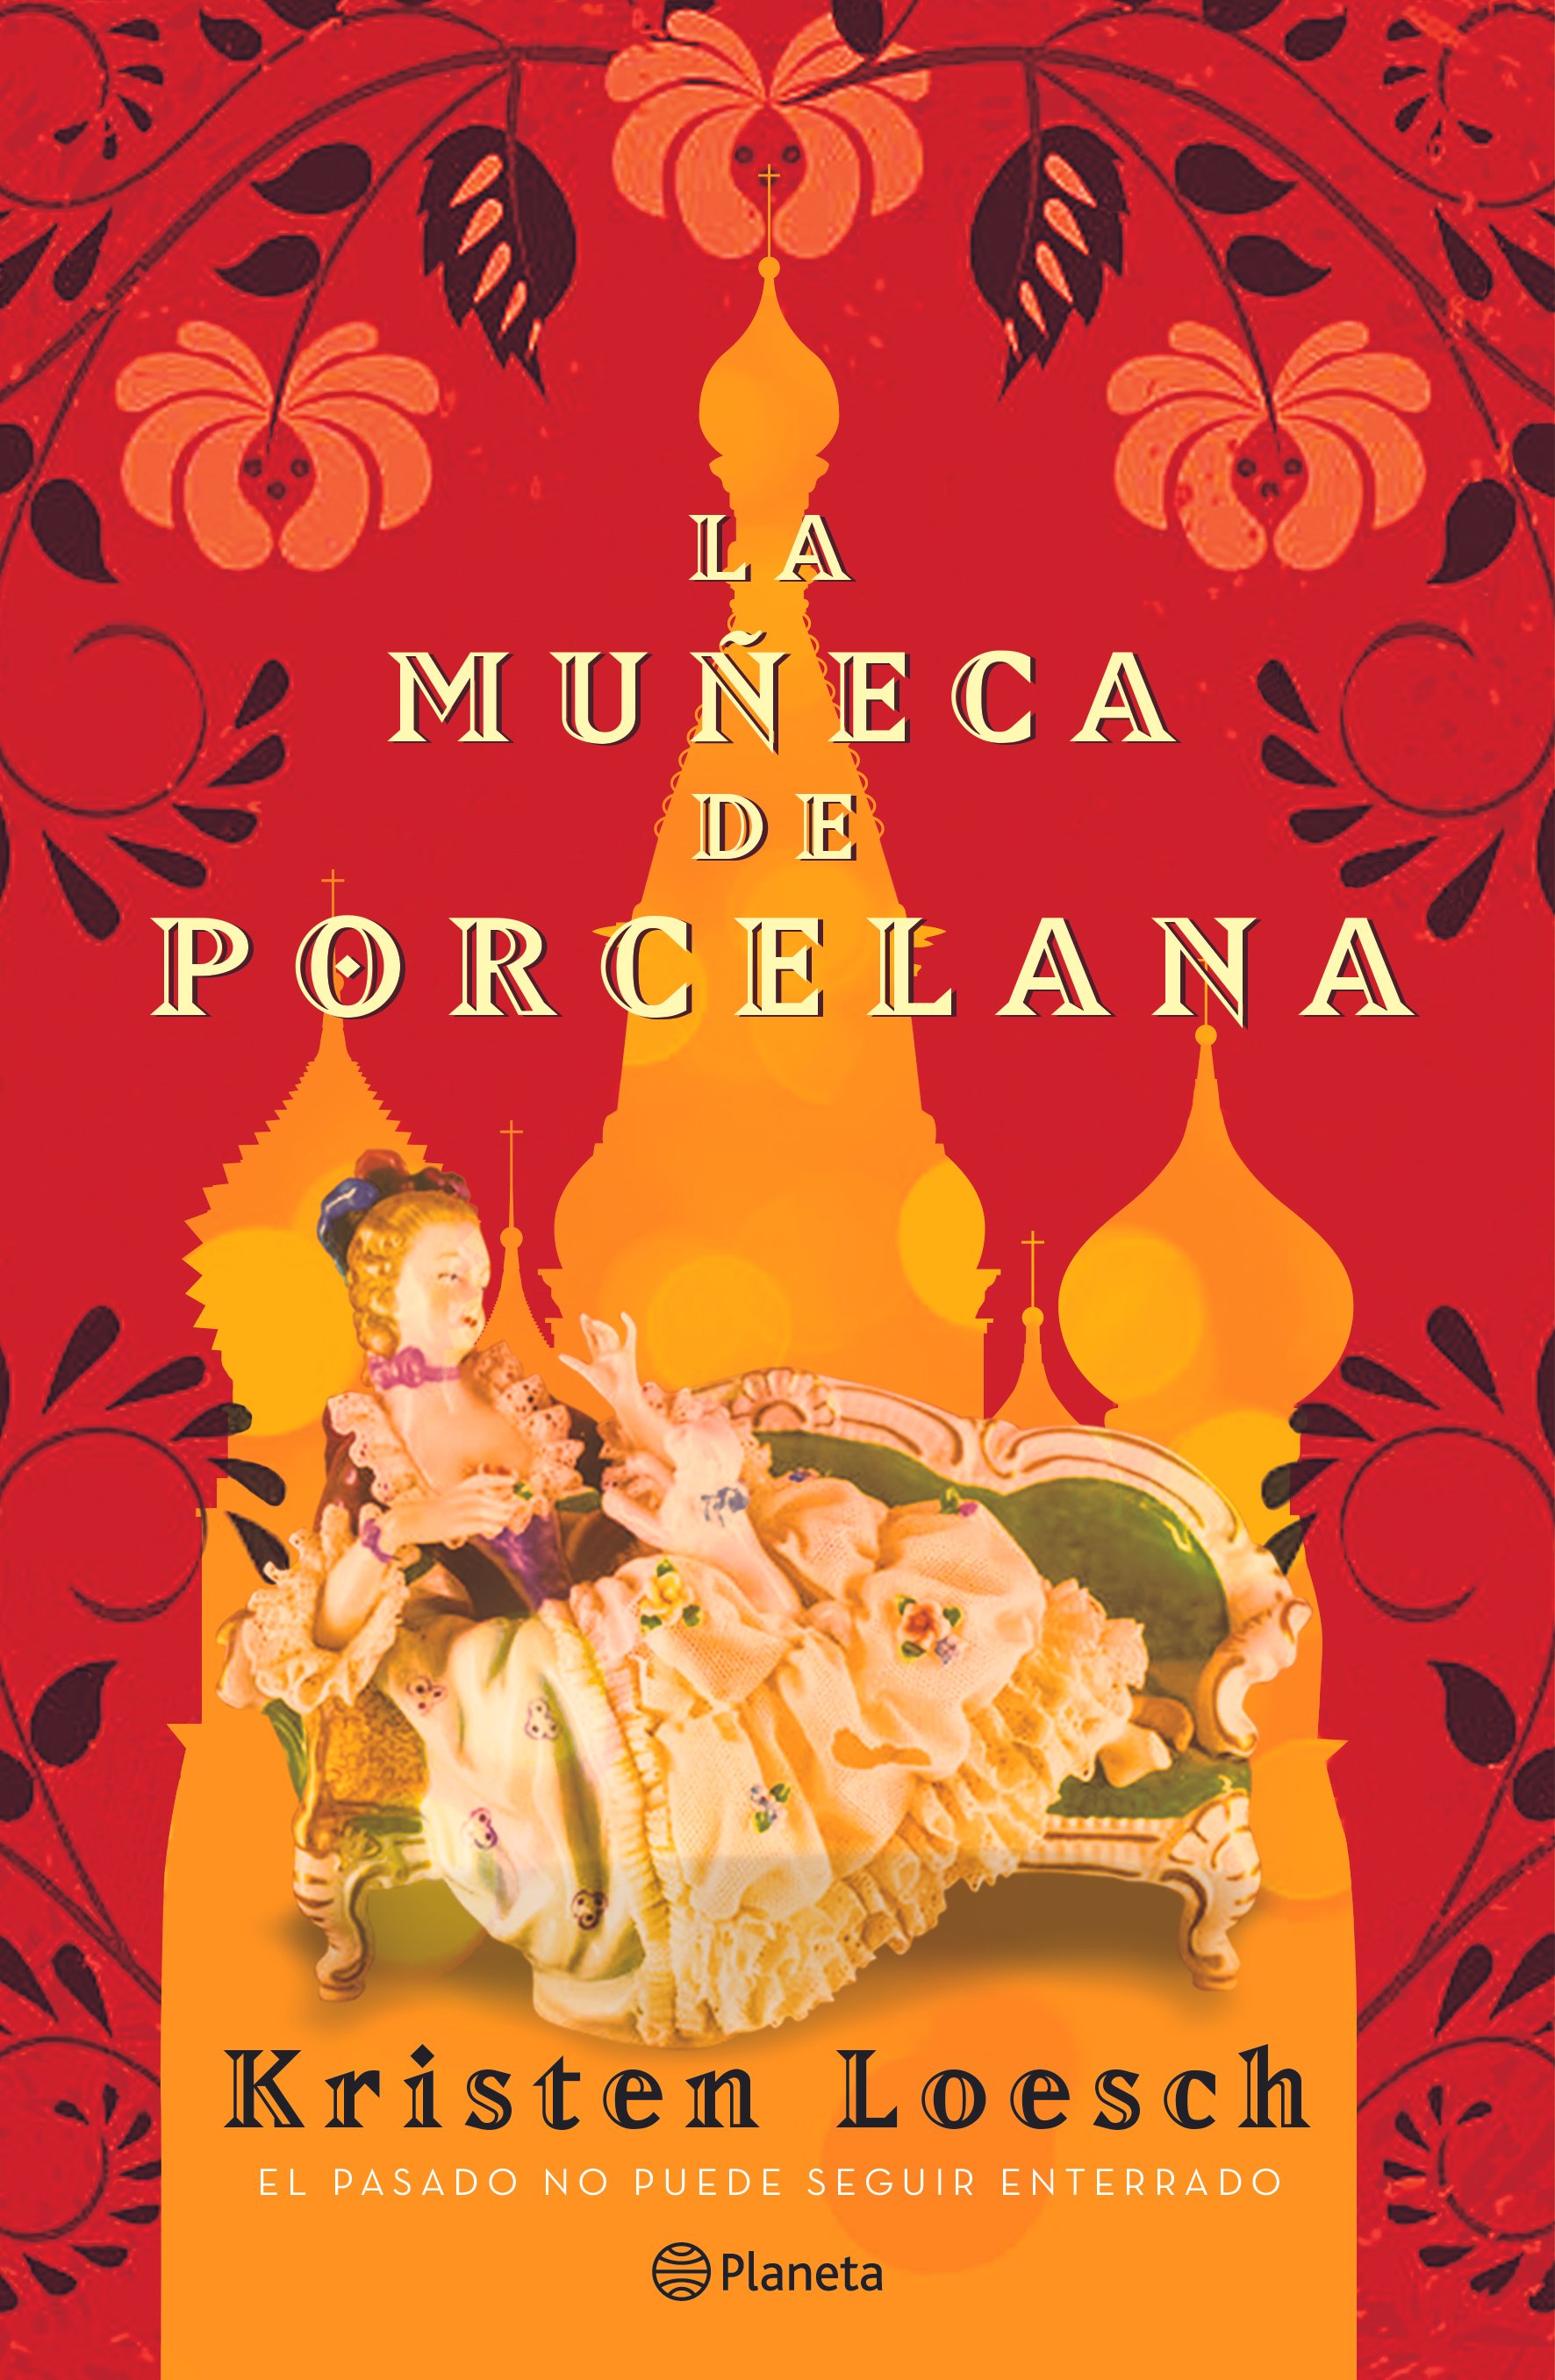 Spanish - for Mexico - cover LA MU„ECA DE PORCELANA PLANETA MX.png